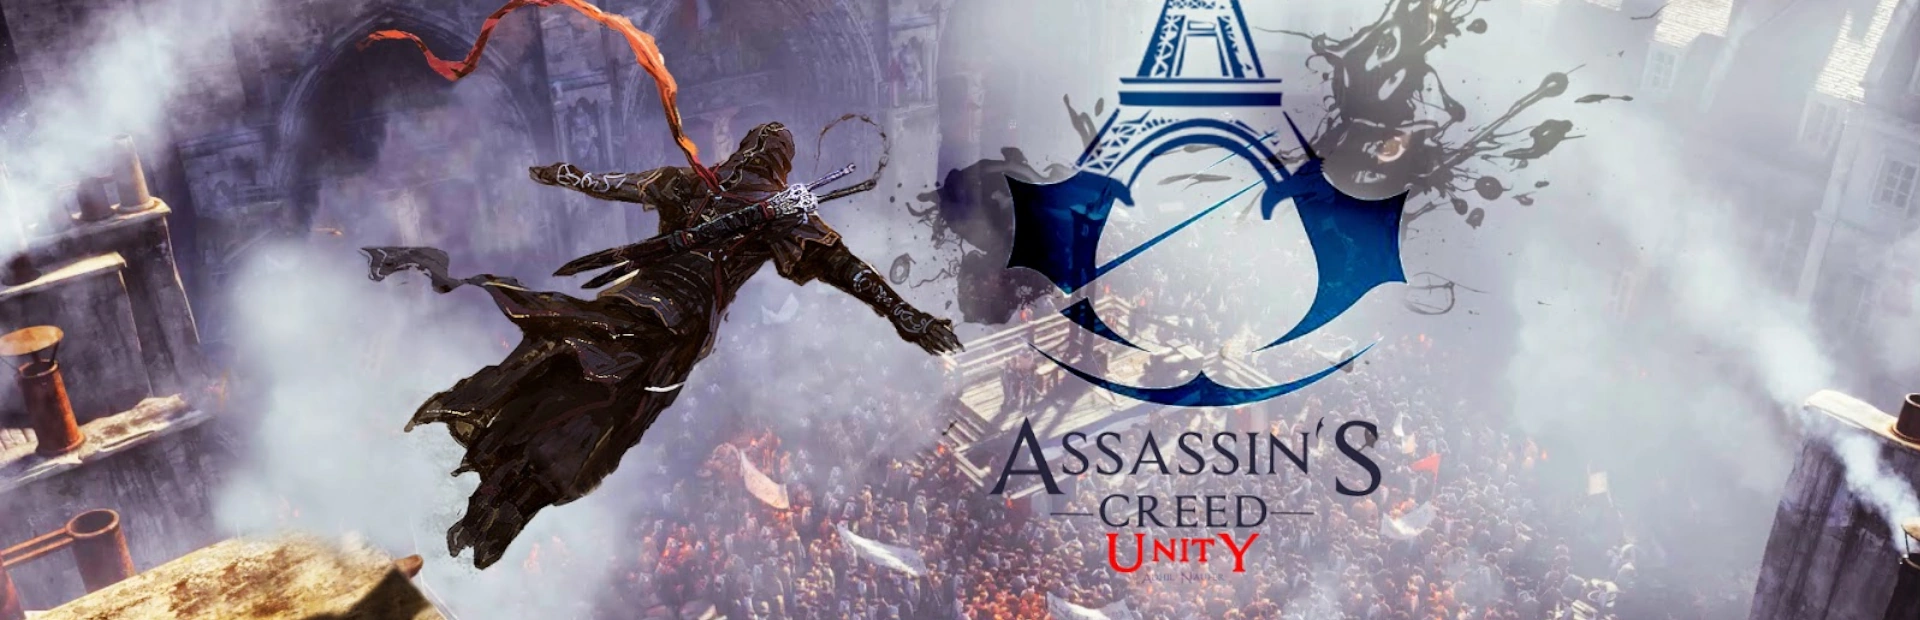 دانلود بازی Assassin's Creed Unity برای کامپیوتر | گیمباتو